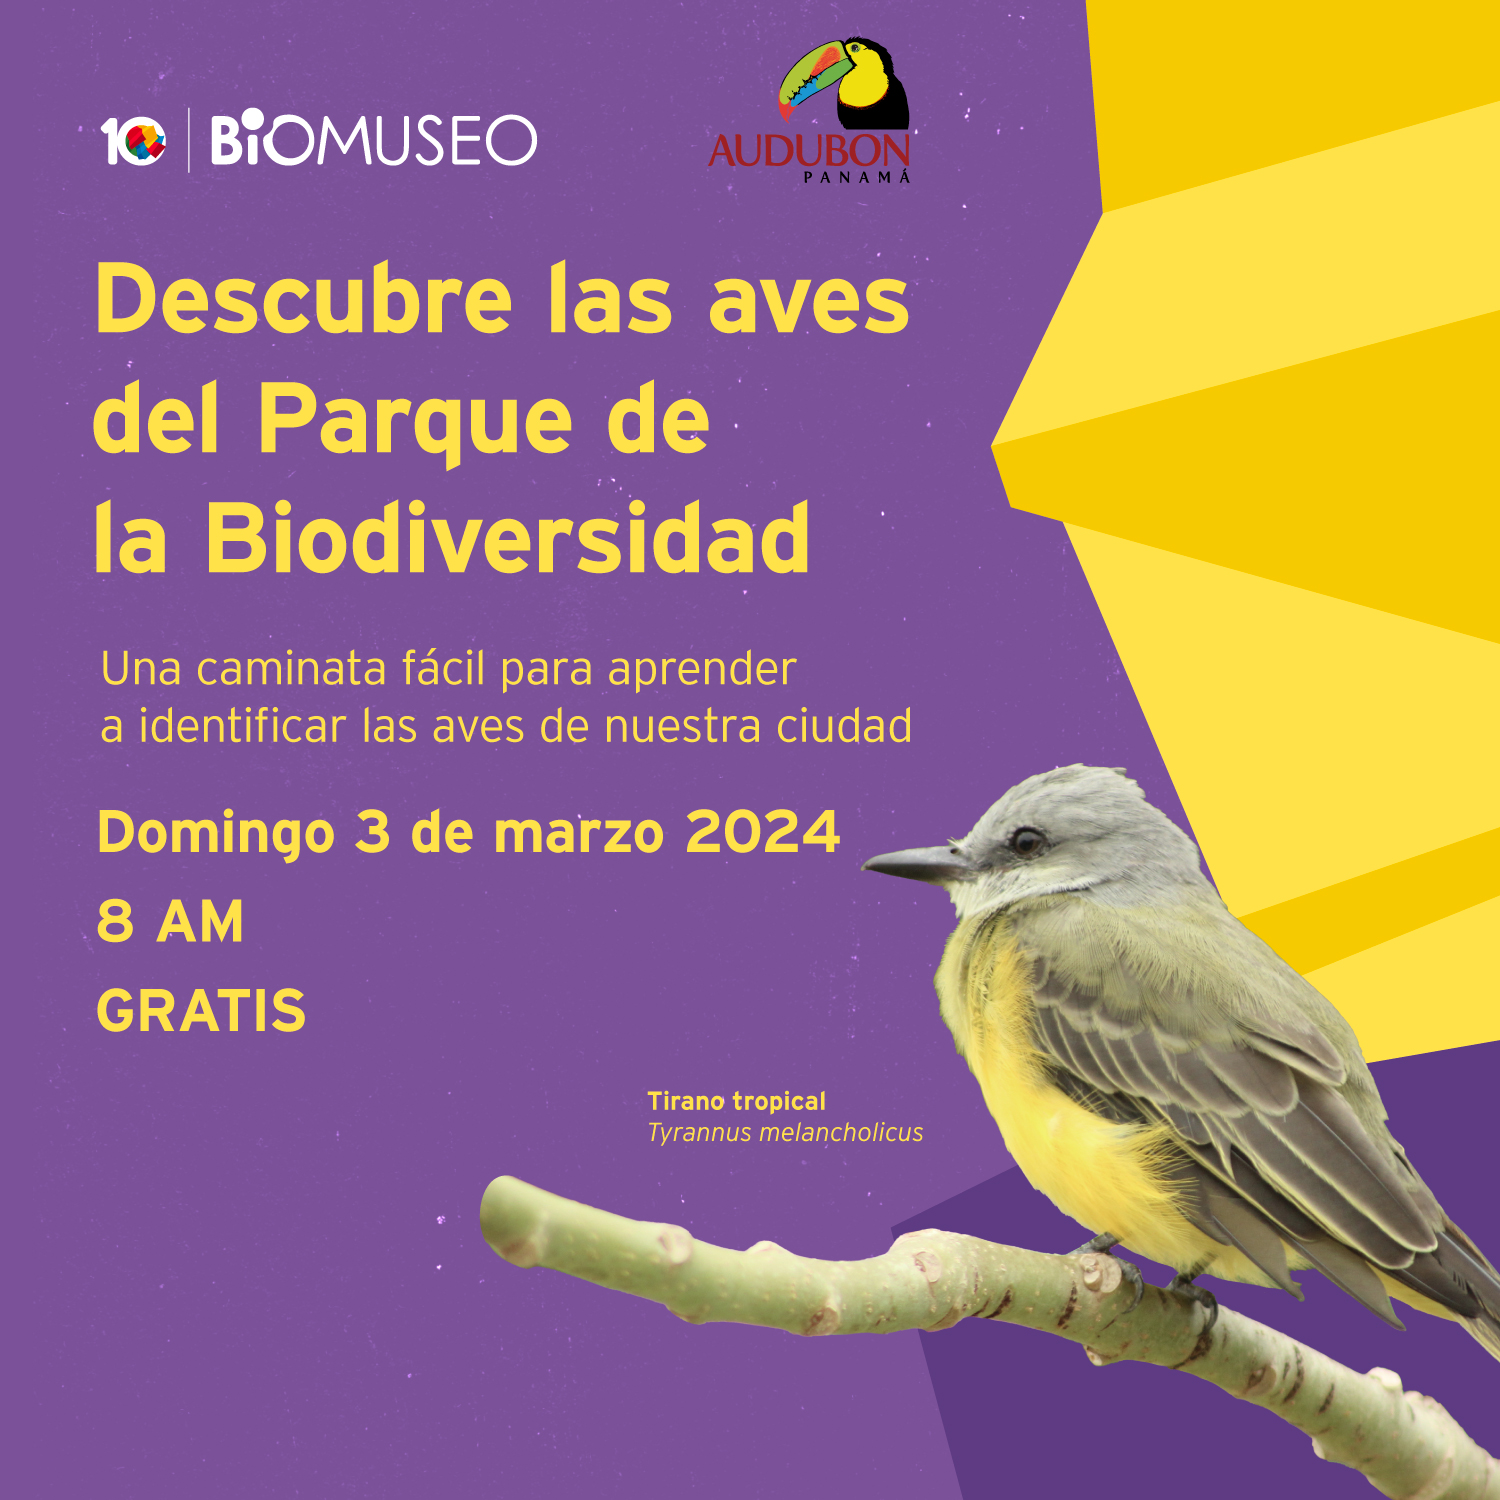 Descubre las aves del Parque de la Biodiversidad